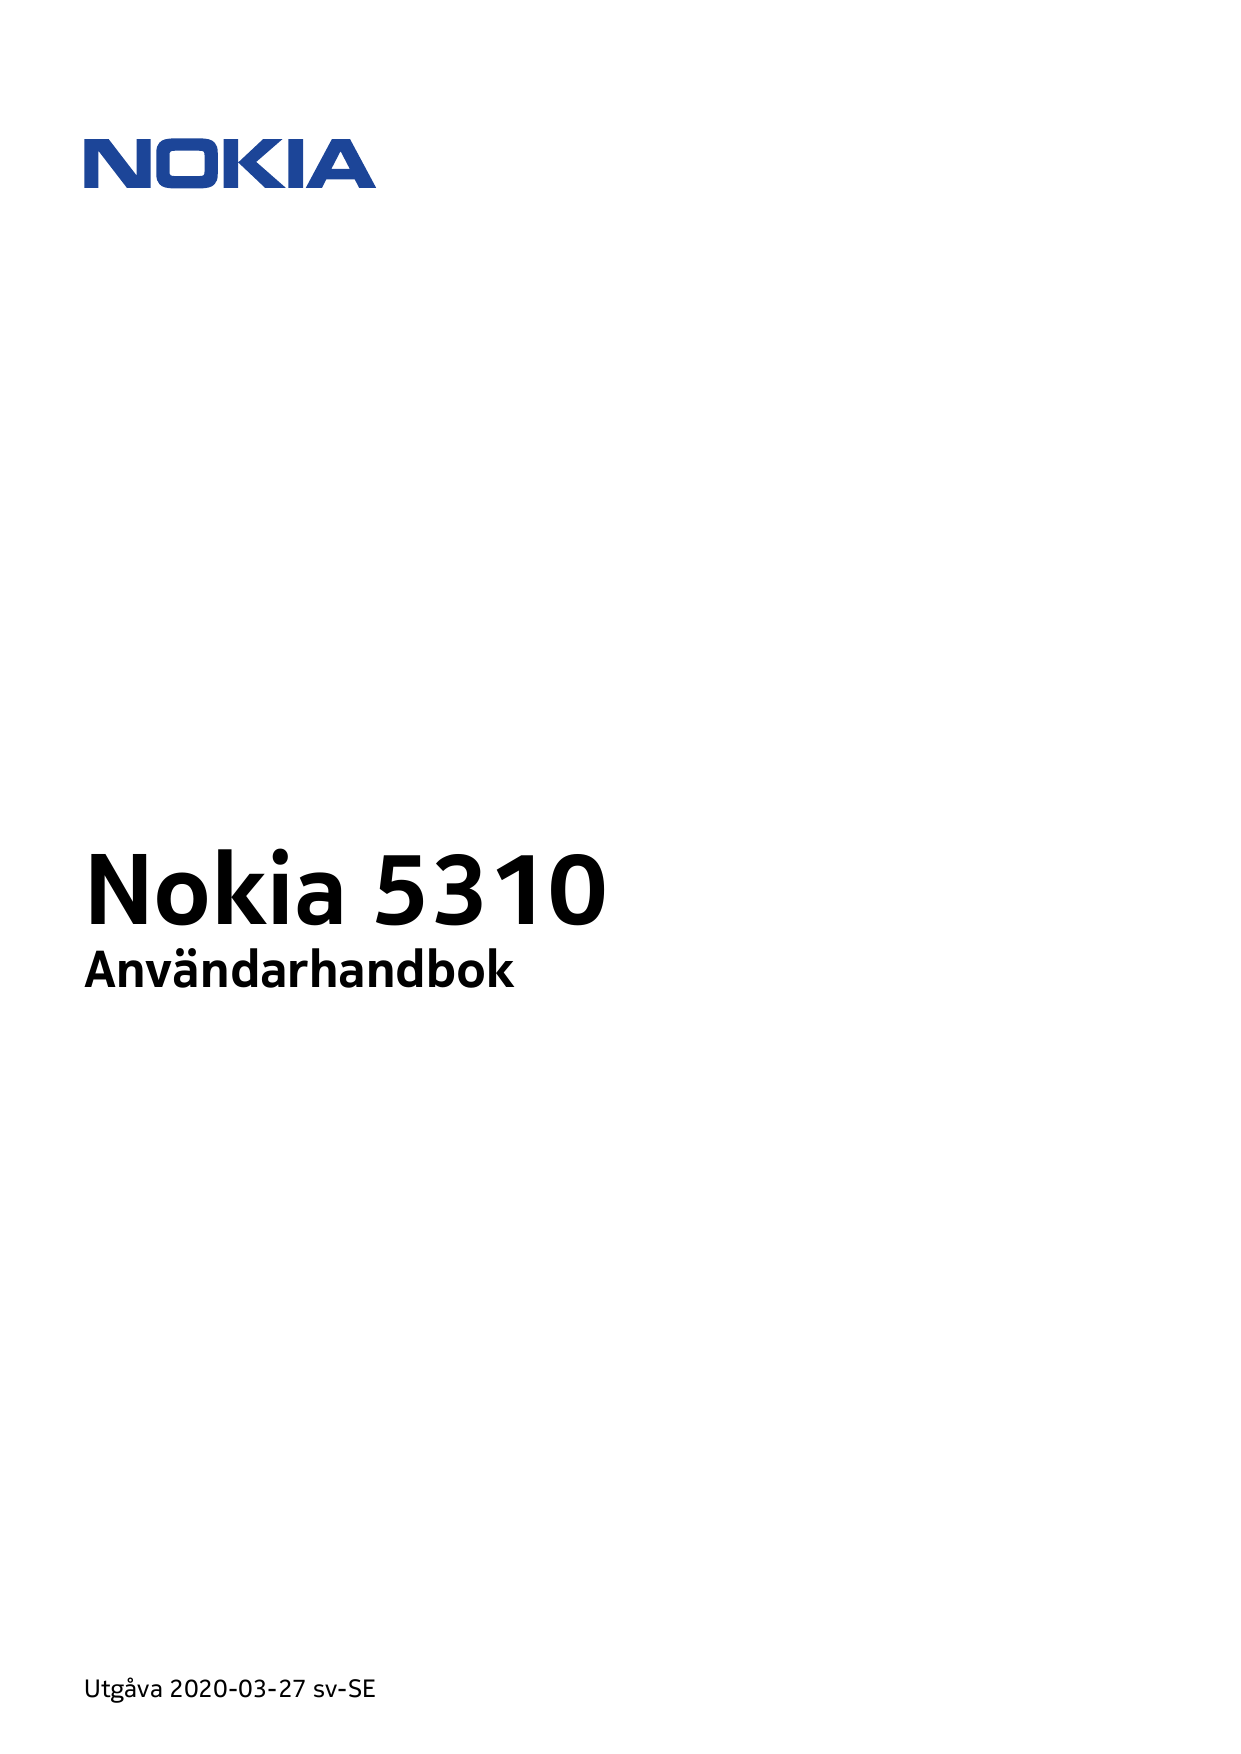 Nokia 5310AnvändarhandbokUtgåva 2020-03-27 sv-SE